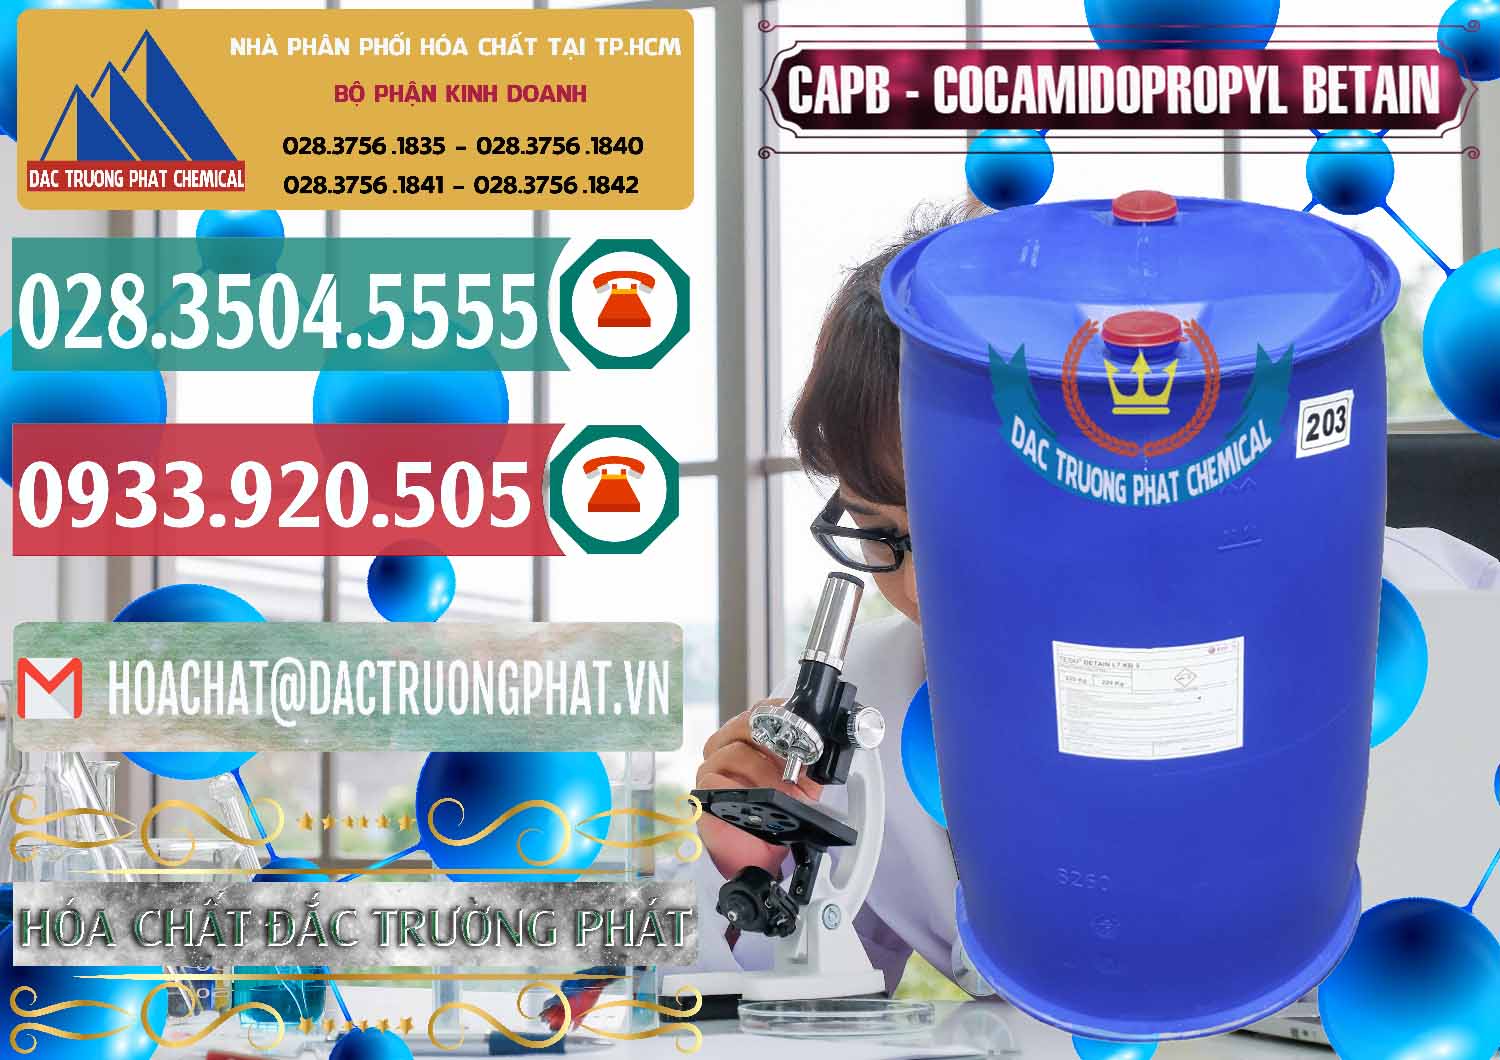 Bán - cung cấp Cocamidopropyl Betaine - CAPB Tego Indonesia - 0327 - Chuyên bán & cung cấp hóa chất tại TP.HCM - muabanhoachat.vn